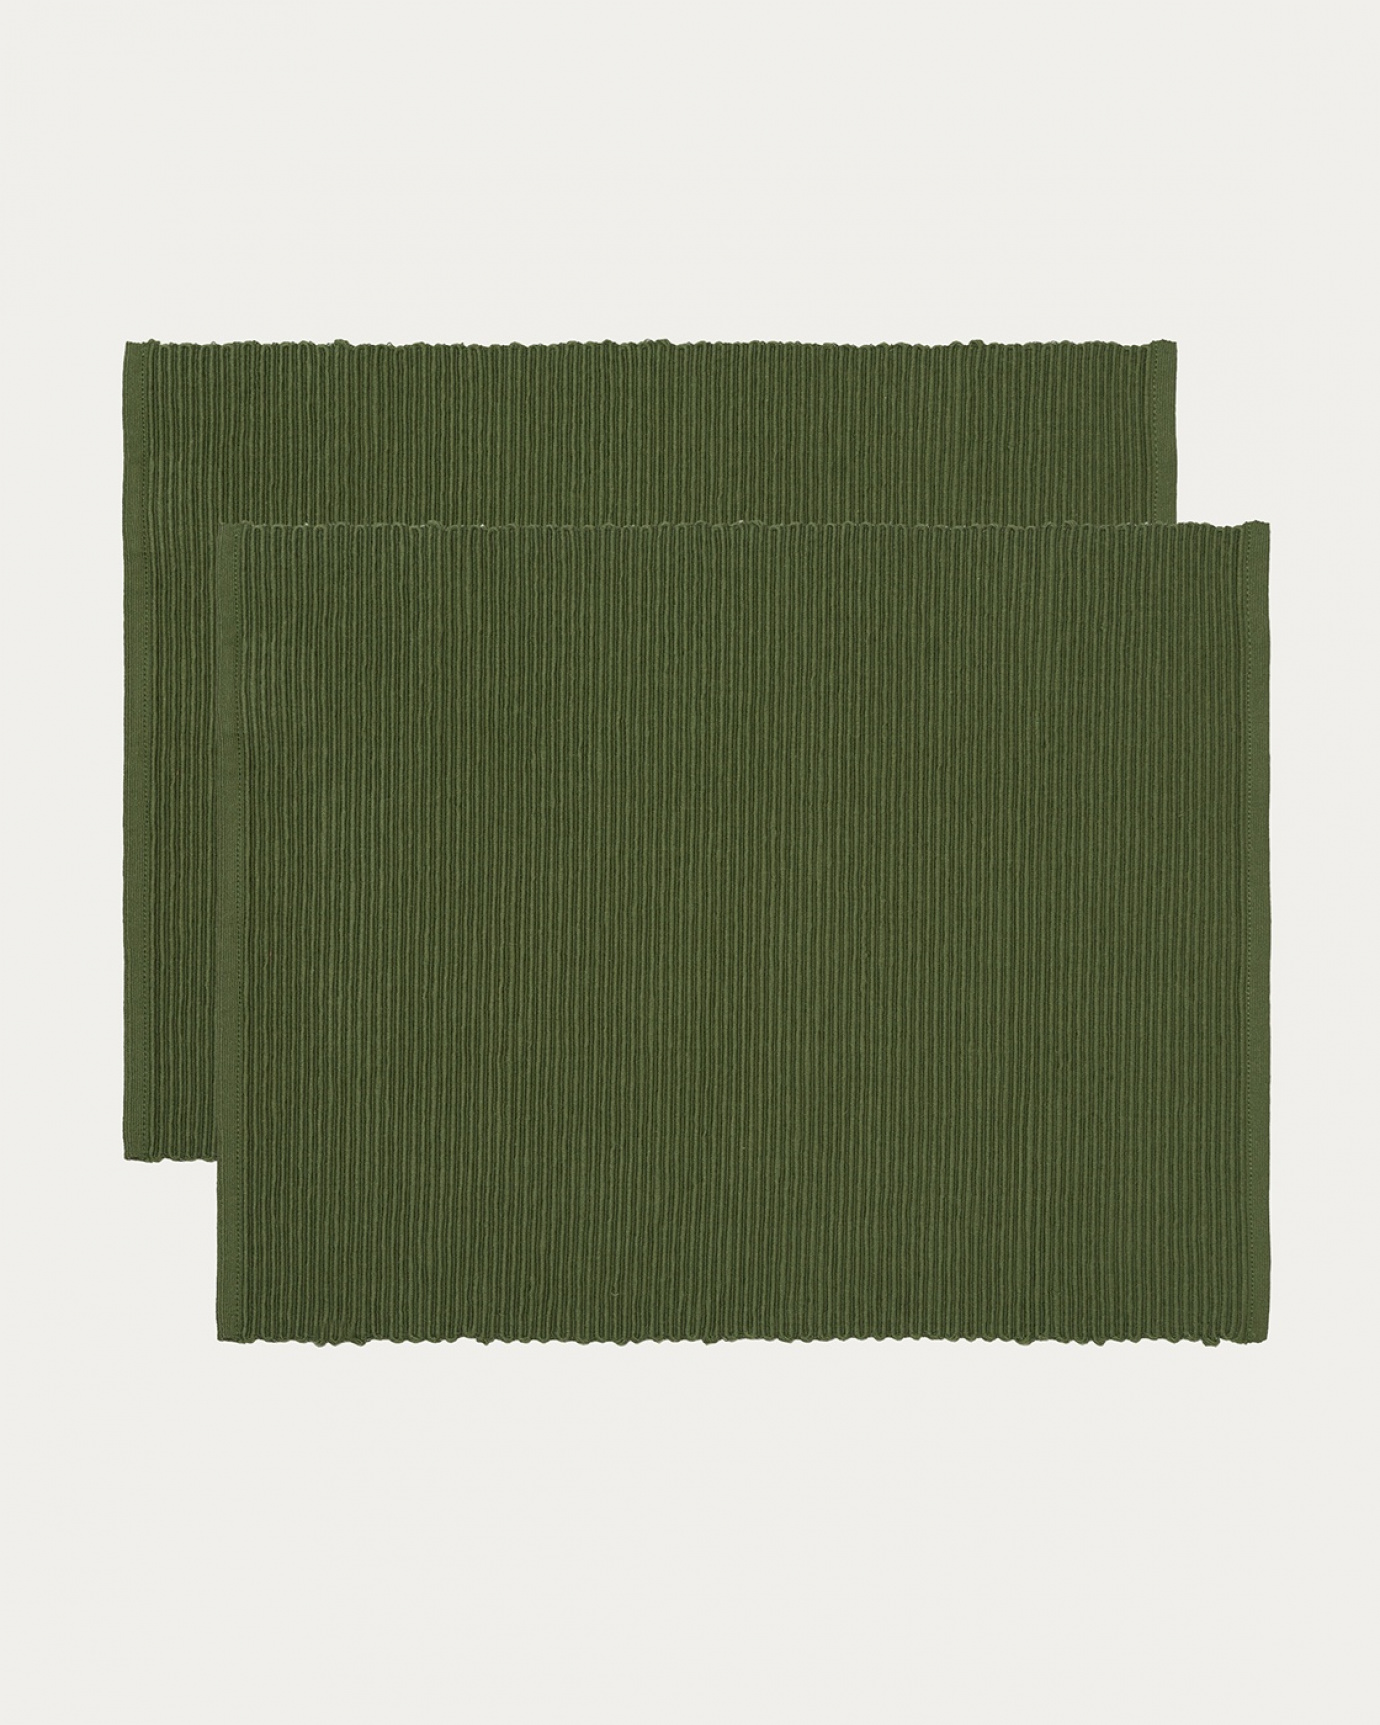 Image du produit set de table UNI vert olive foncé en coton doux de qualité côtelée de LINUM DESIGN. Taille 35 x 46 cm et vendu en lot de 2.